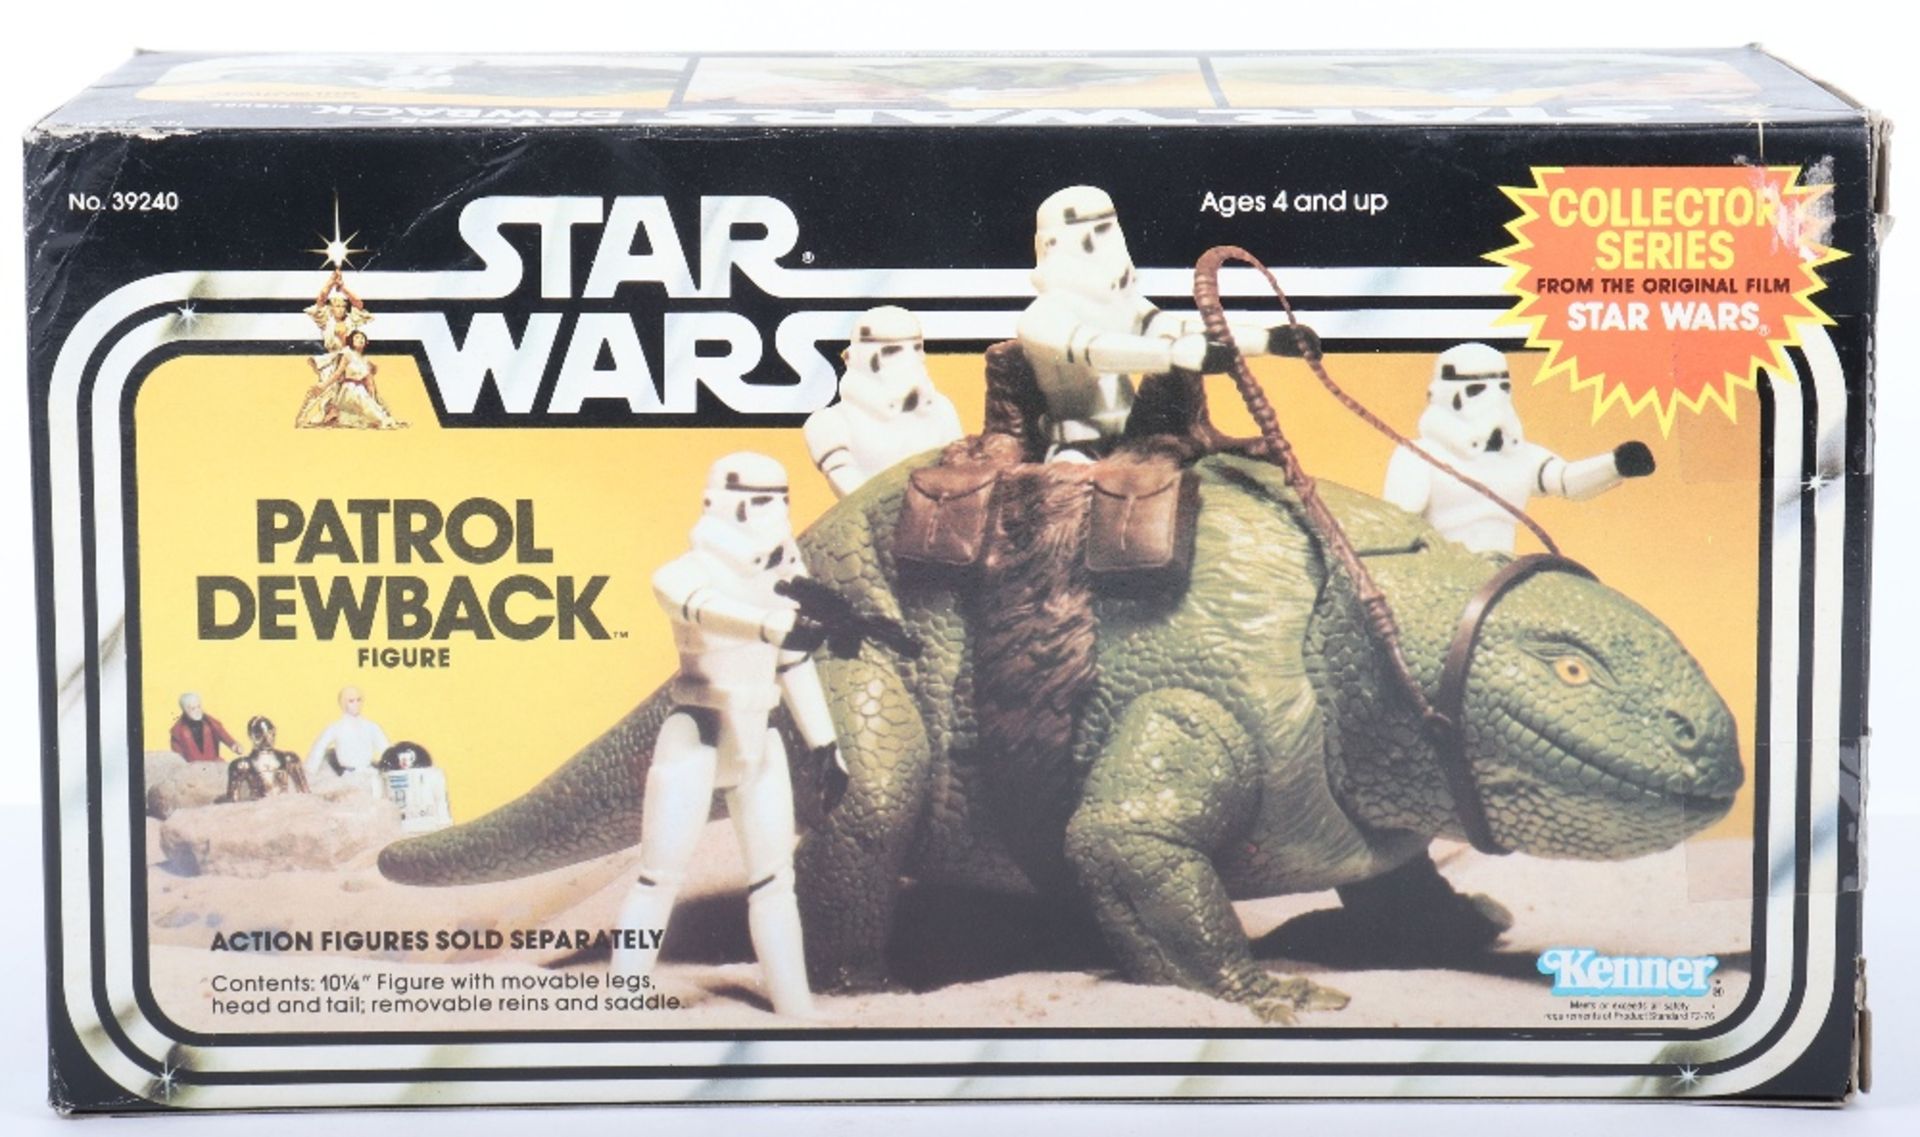 Boxed Kenner Star Wars Patrol Dewback Figure - Image 4 of 11